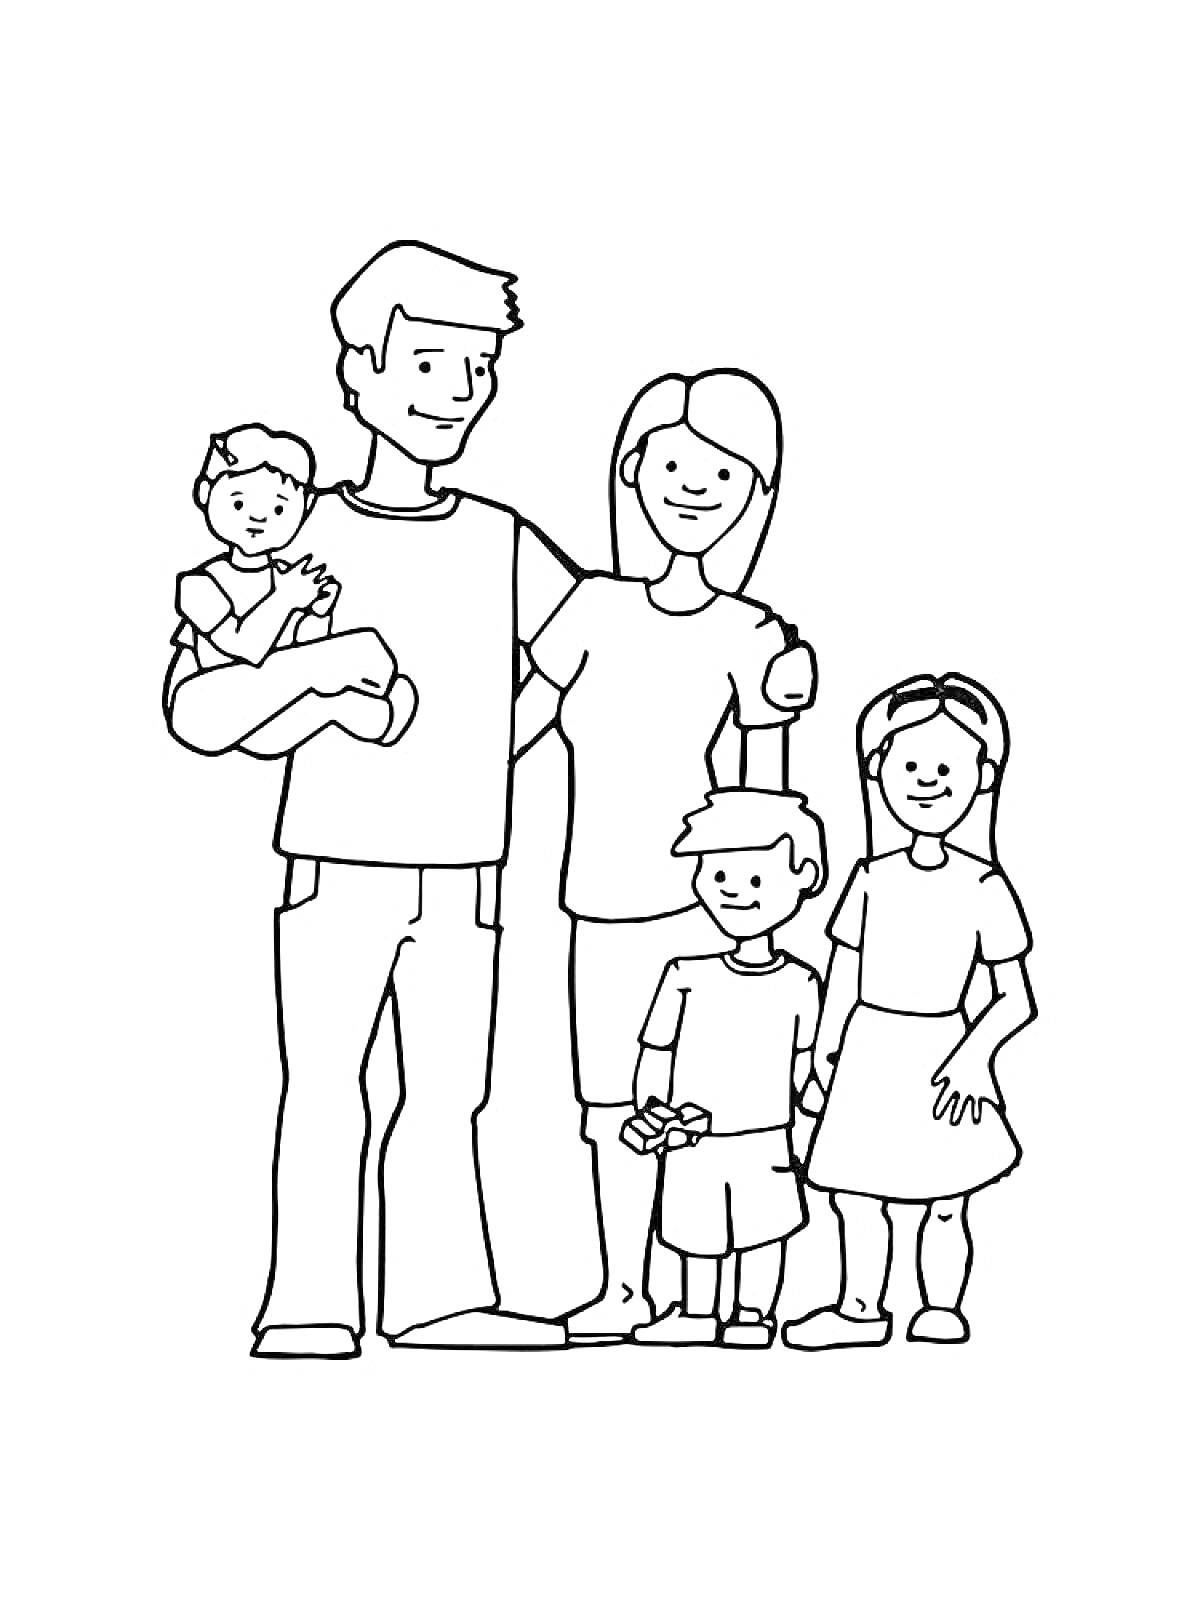 Раскраска Семейный портрет с родителями и тремя детьми, один из которых находится на руках.